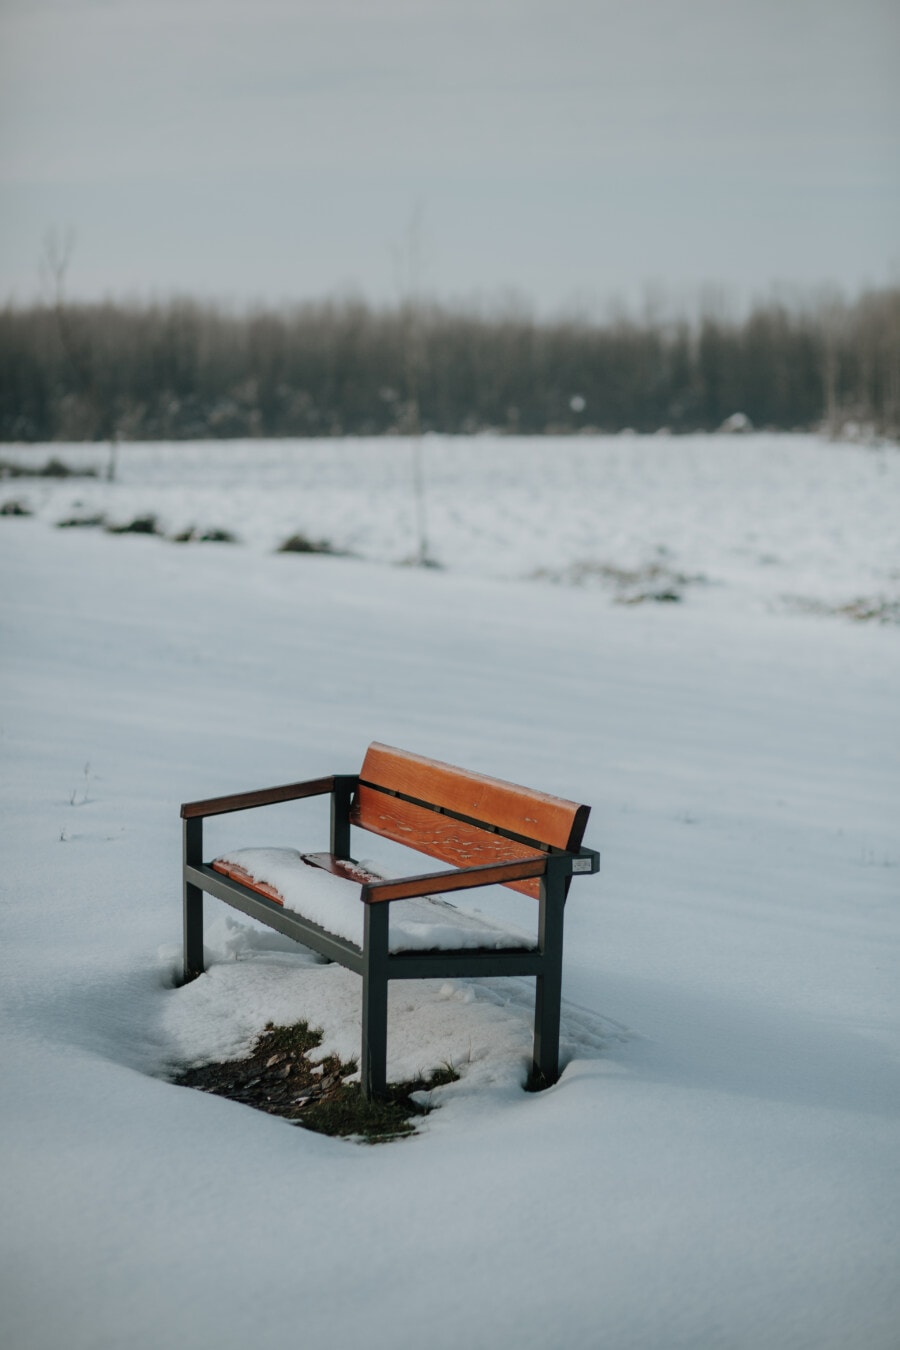 snow, field, winter, bench, frozen, empty, frosty, ice, landscape, seat